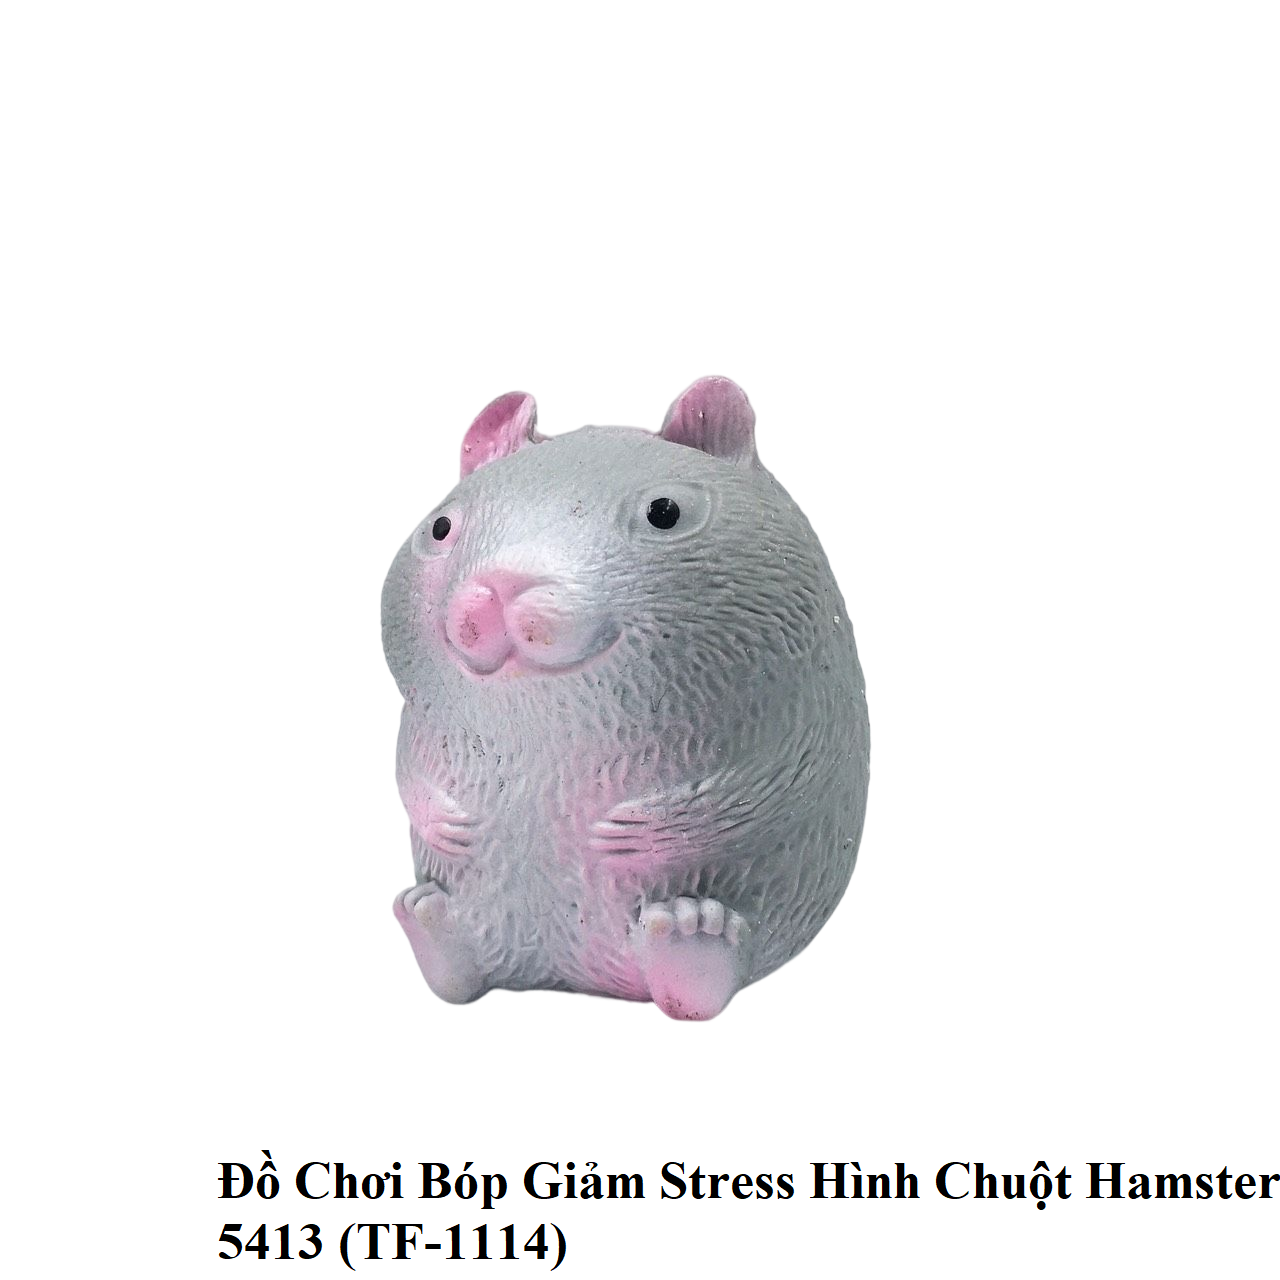 Đồ Chơi Bóp Giảm Stress Hình Chuột Hamster 5413 (TF-1114) - HAPPY TIME